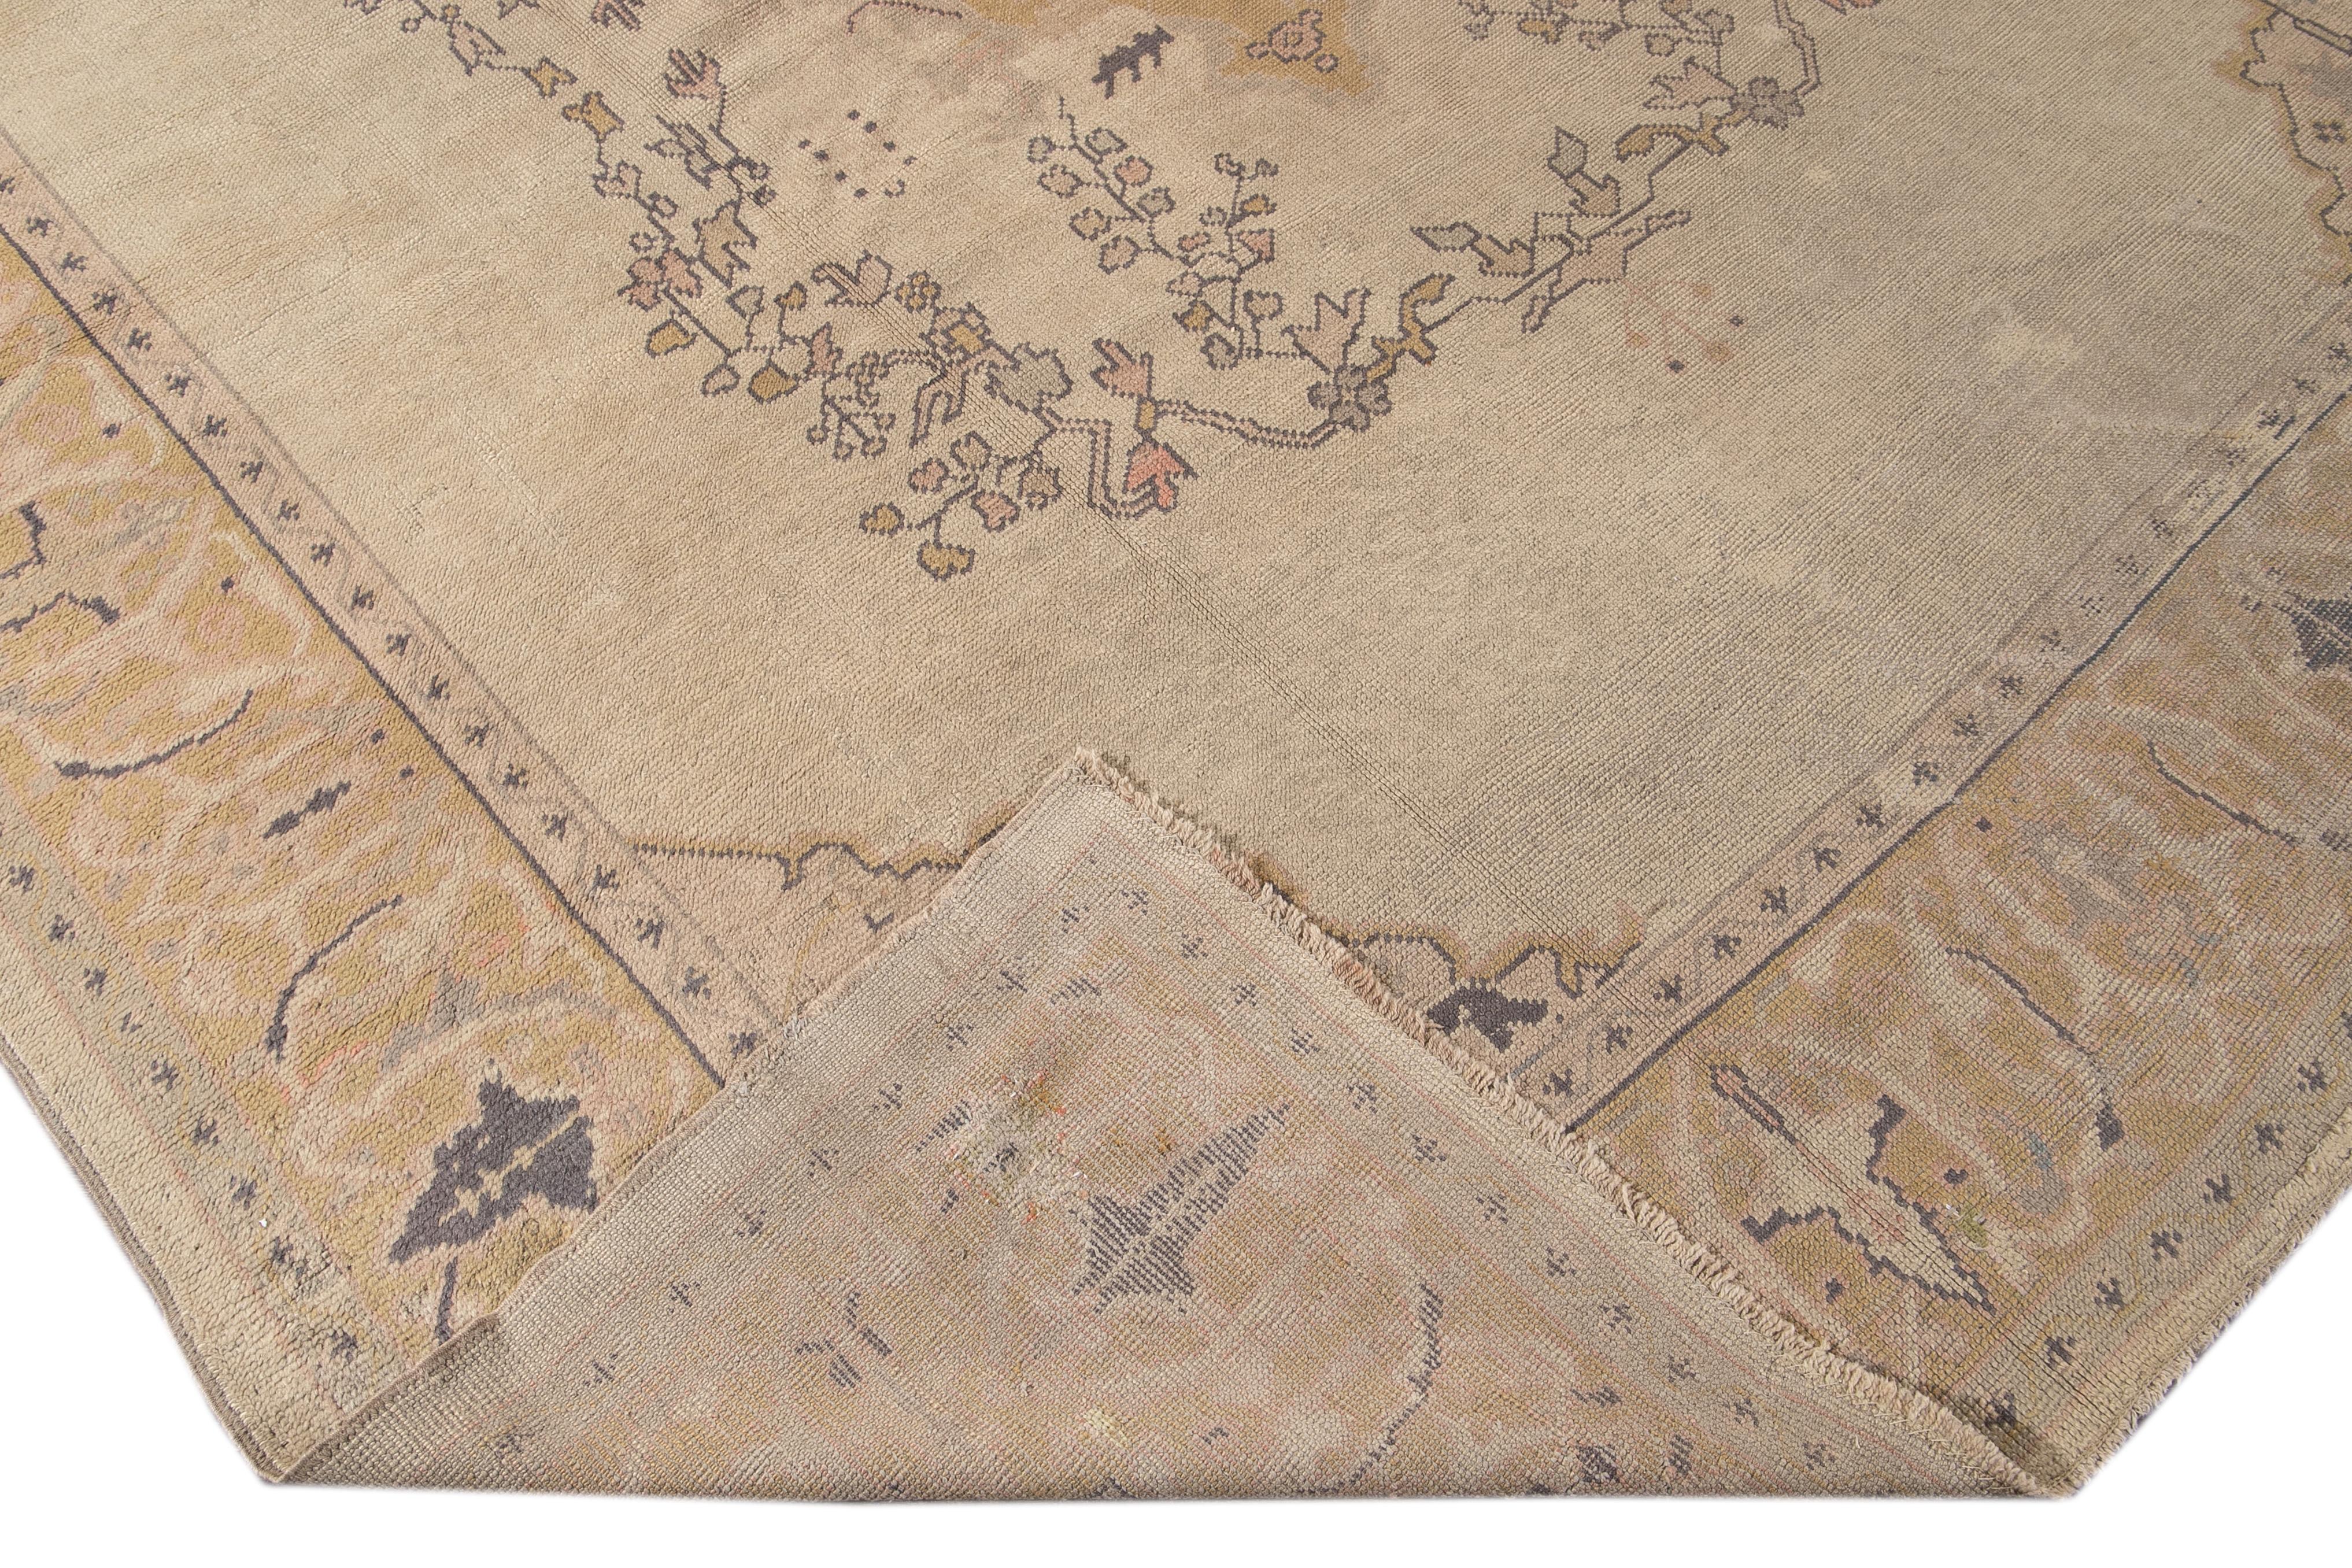 Magnifique tapis turc antique Oushak en laine nouée à la main avec le champ beige. Ce tapis Oushak présente un cadre doré aux accents pêche, rose et jaune dans un magnifique motif floral en médaillon central.

Ce tapis mesure : 10'2